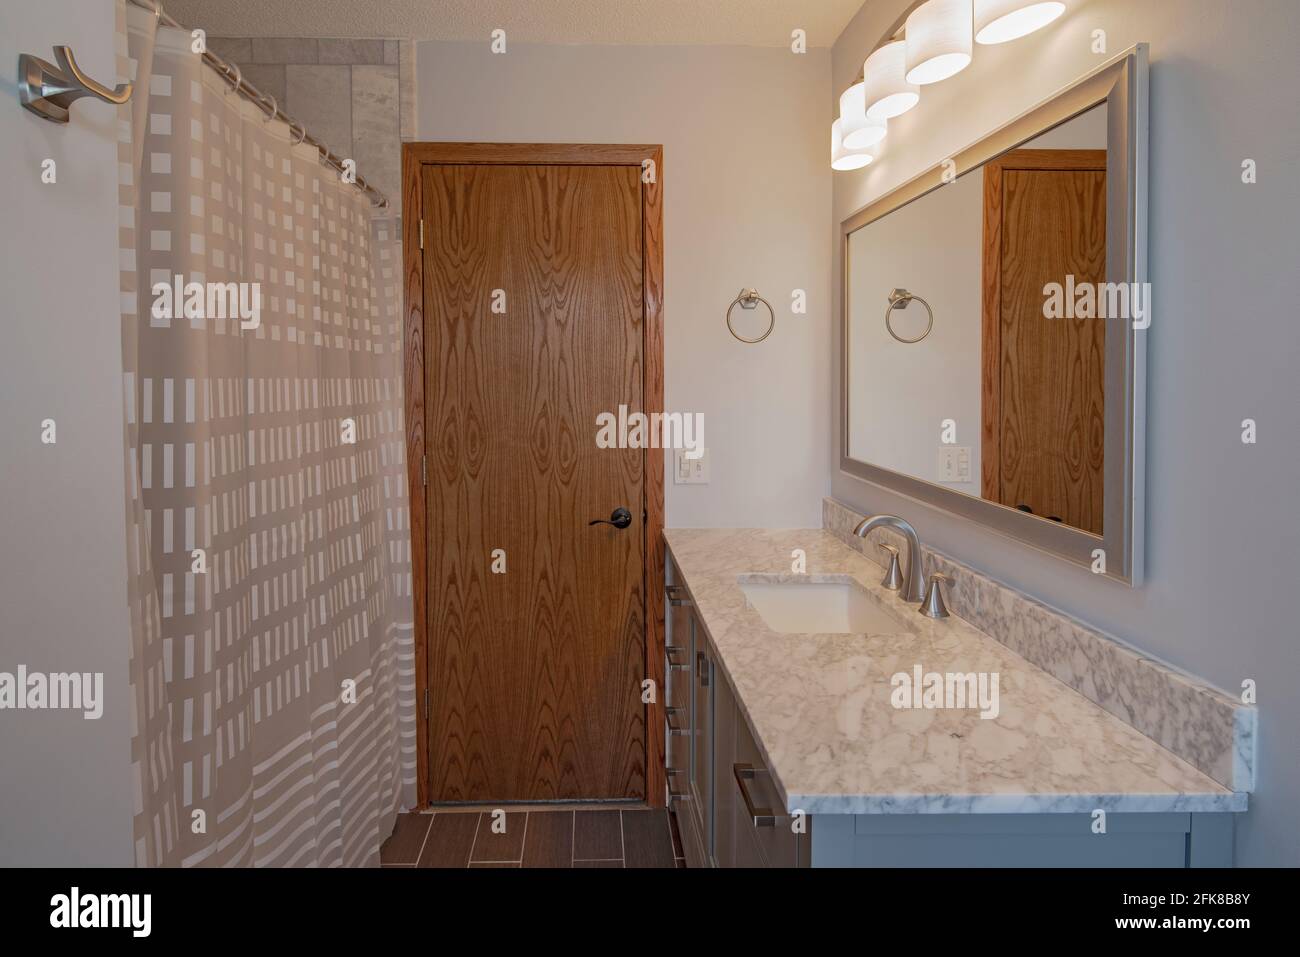 Badezimmer mit Blick auf den Waschtisch, Waschbecken, Spiegelbeleuchtung, Duschvorhang Stockfoto